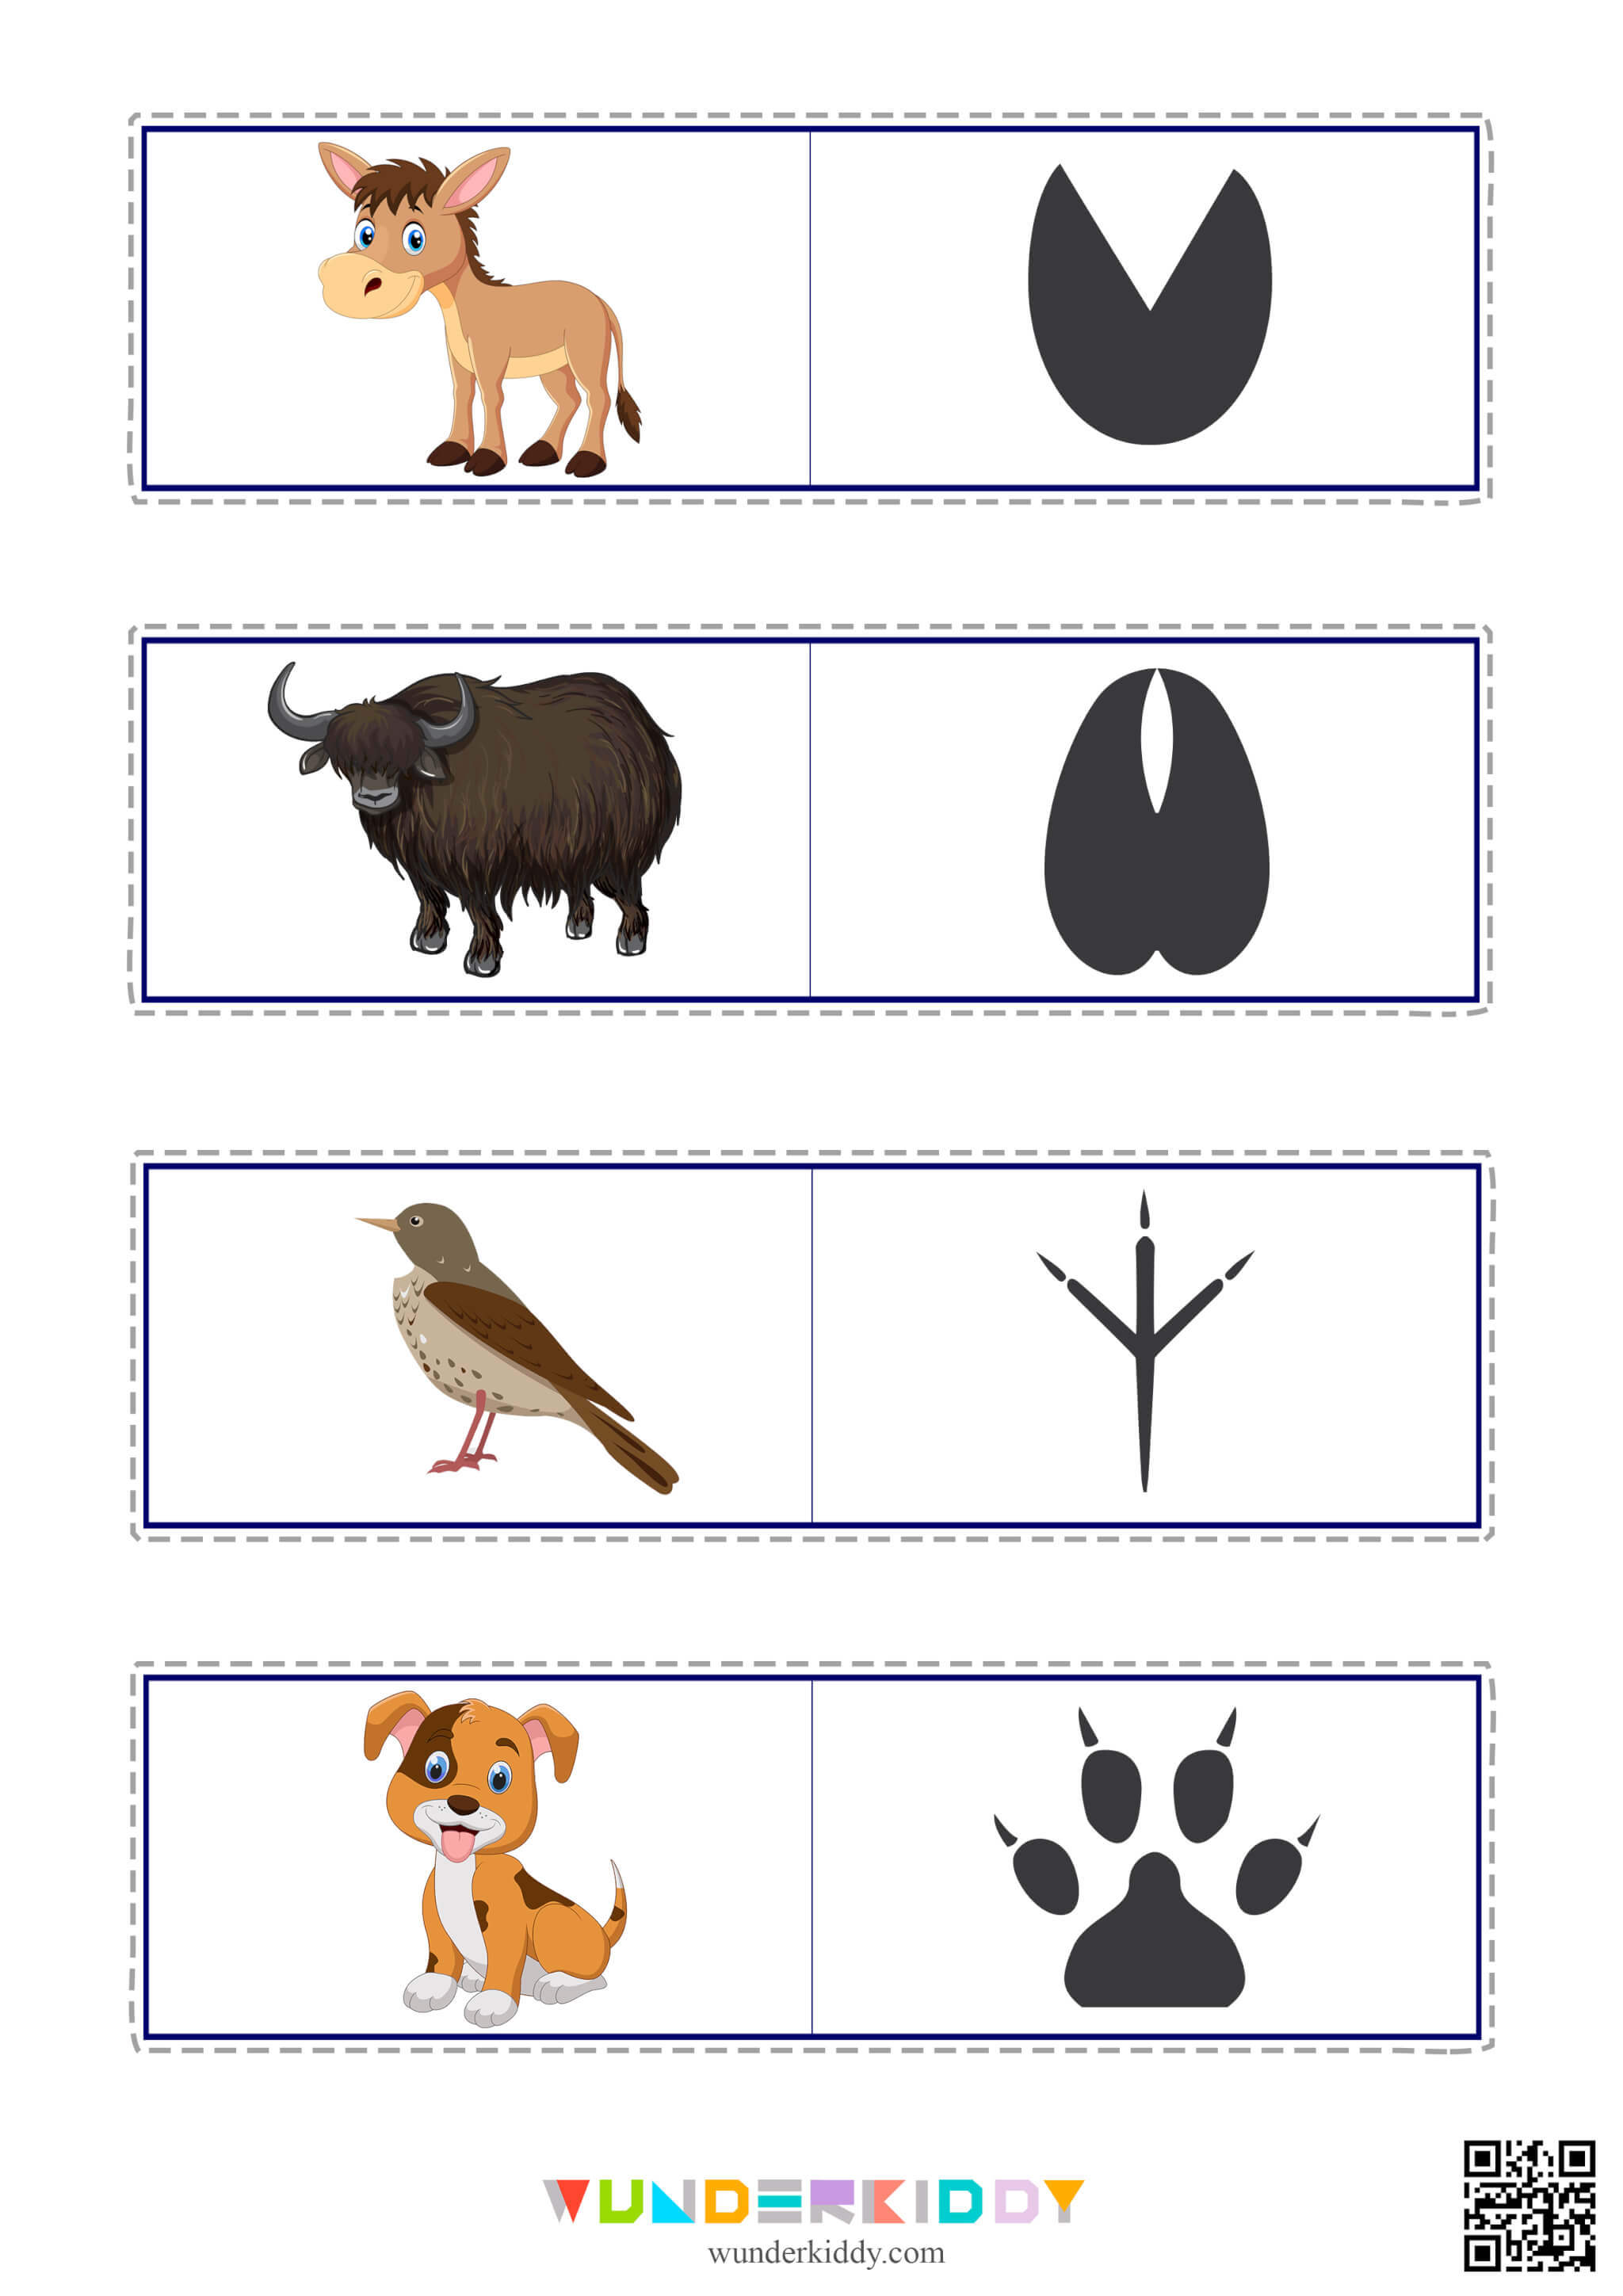 Matching Worksheet Animal Tracks - Image 3